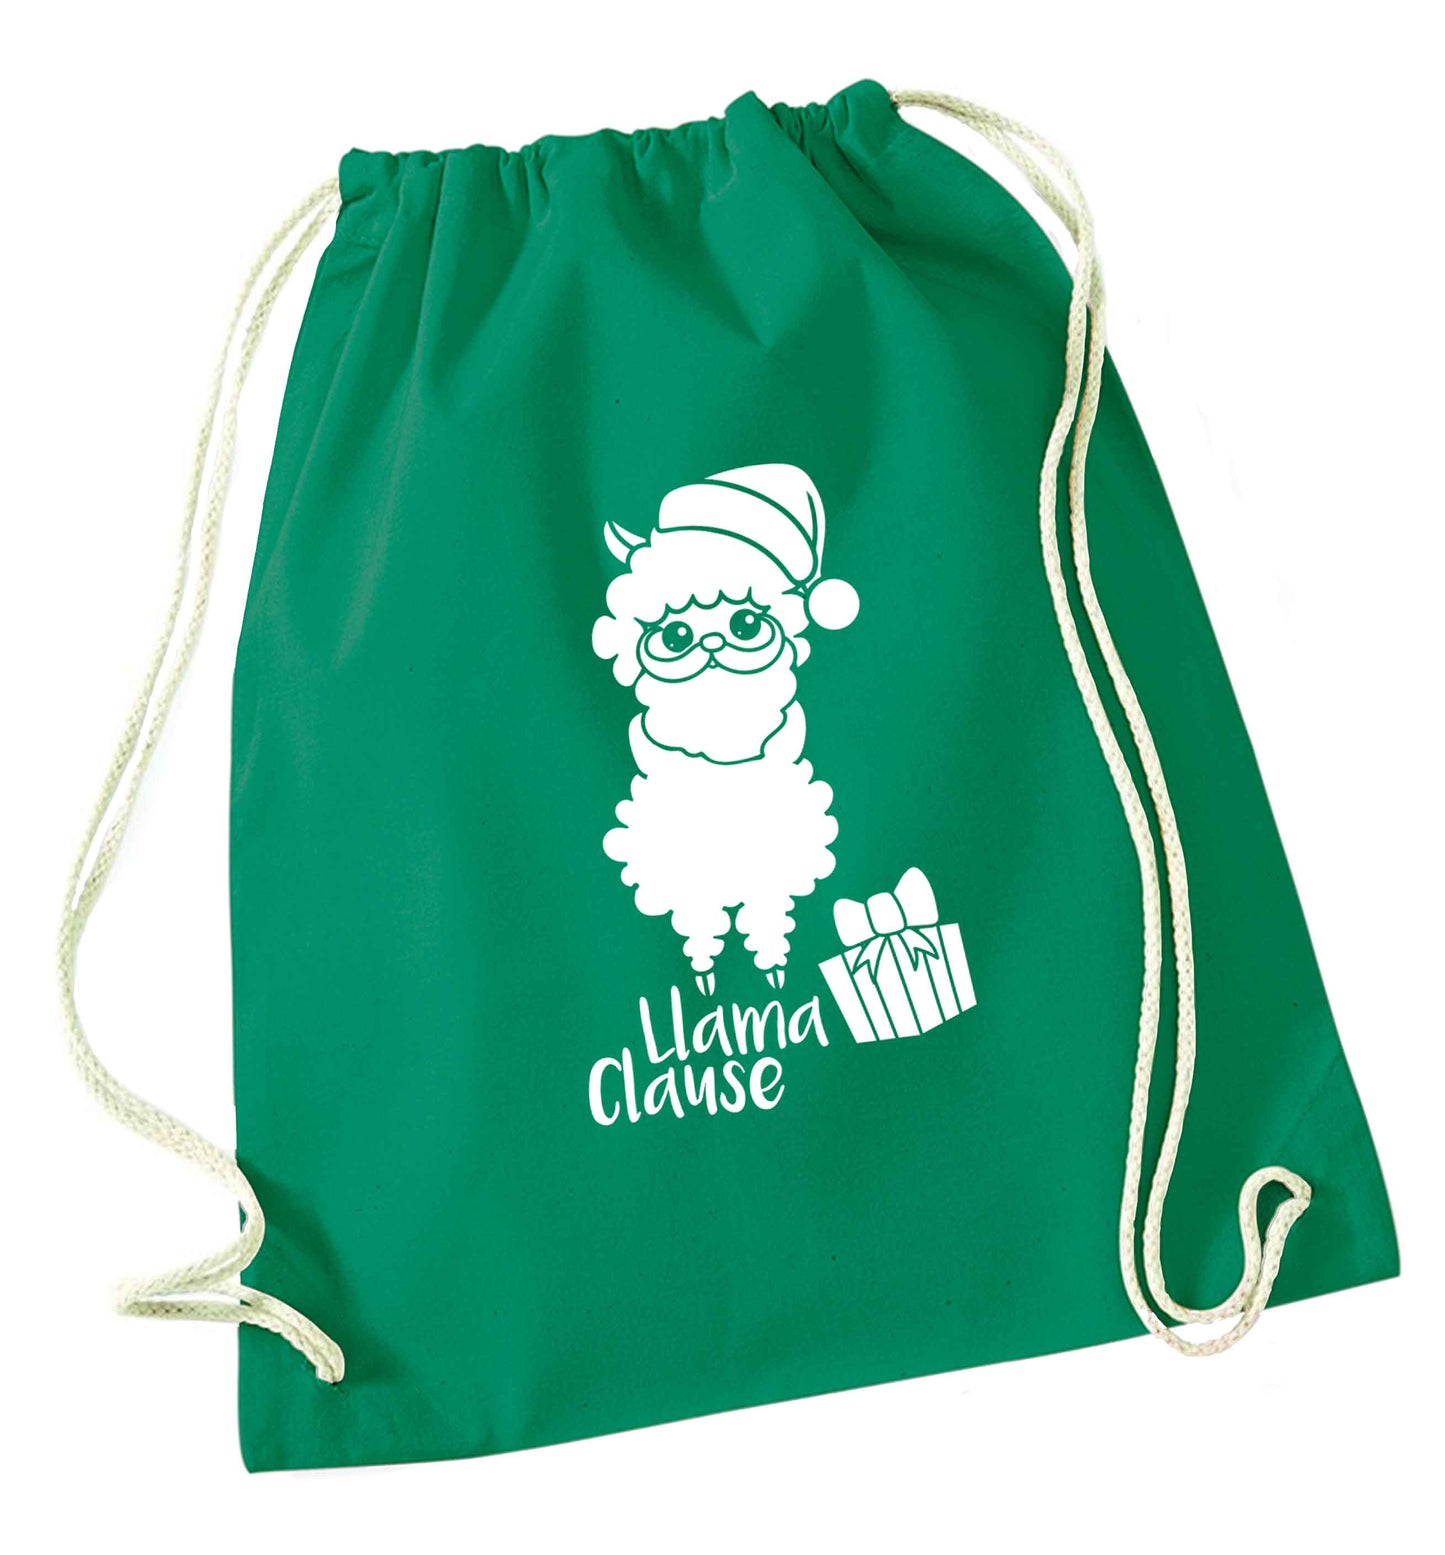 Llama Clause green drawstring bag